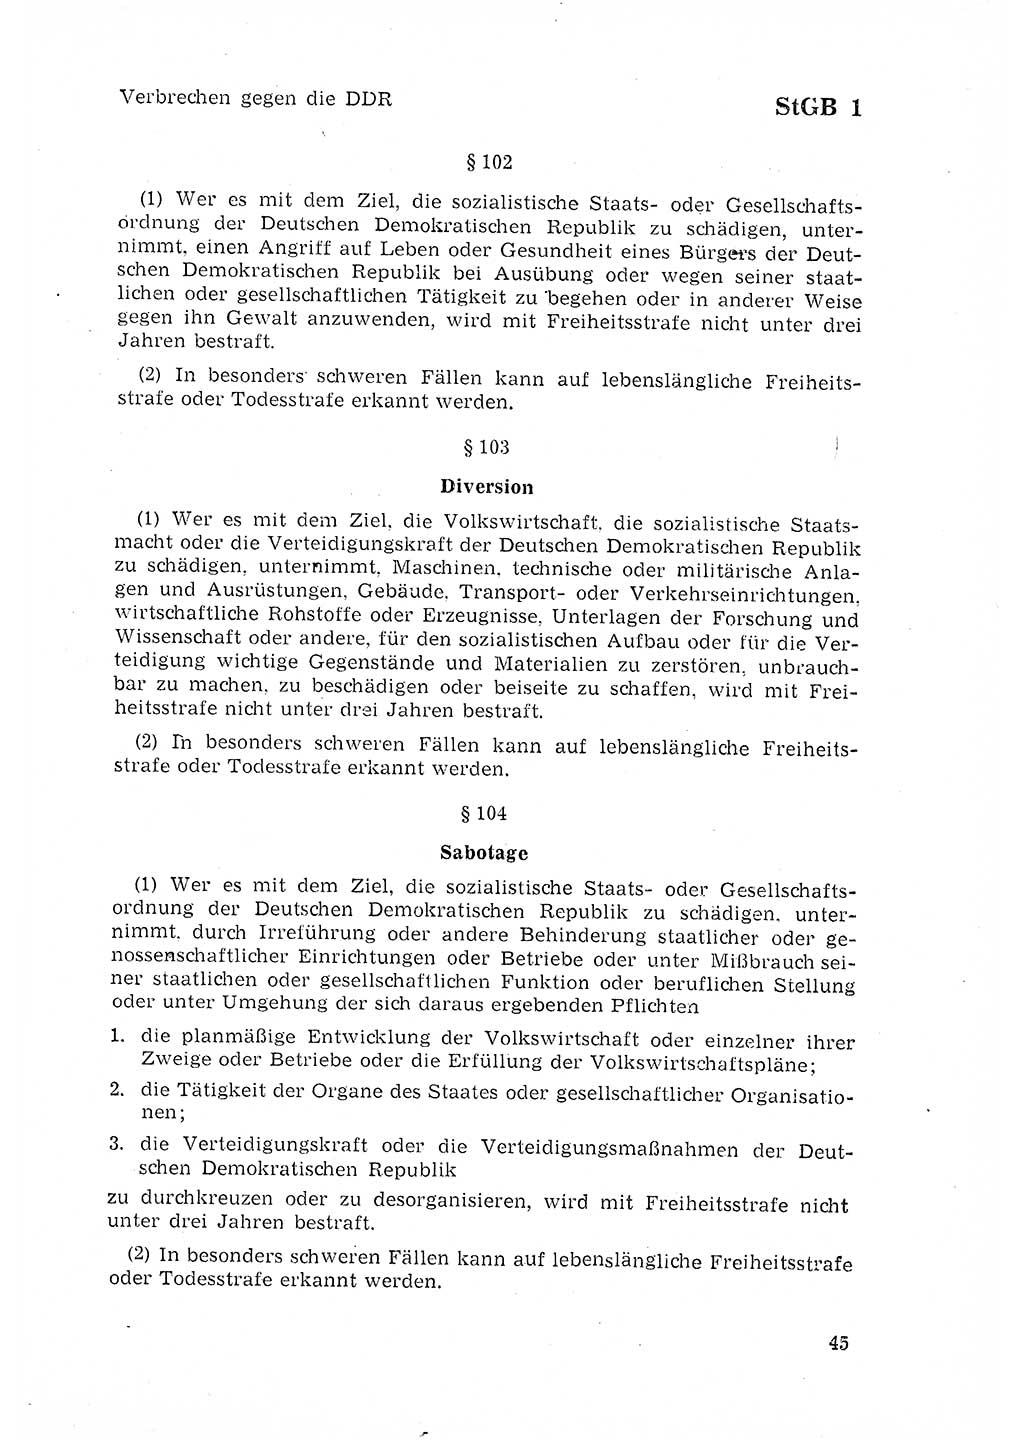 Strafgesetzbuch (StGB) der Deutschen Demokratischen Republik (DDR) 1968, Seite 45 (StGB DDR 1968, S. 45)